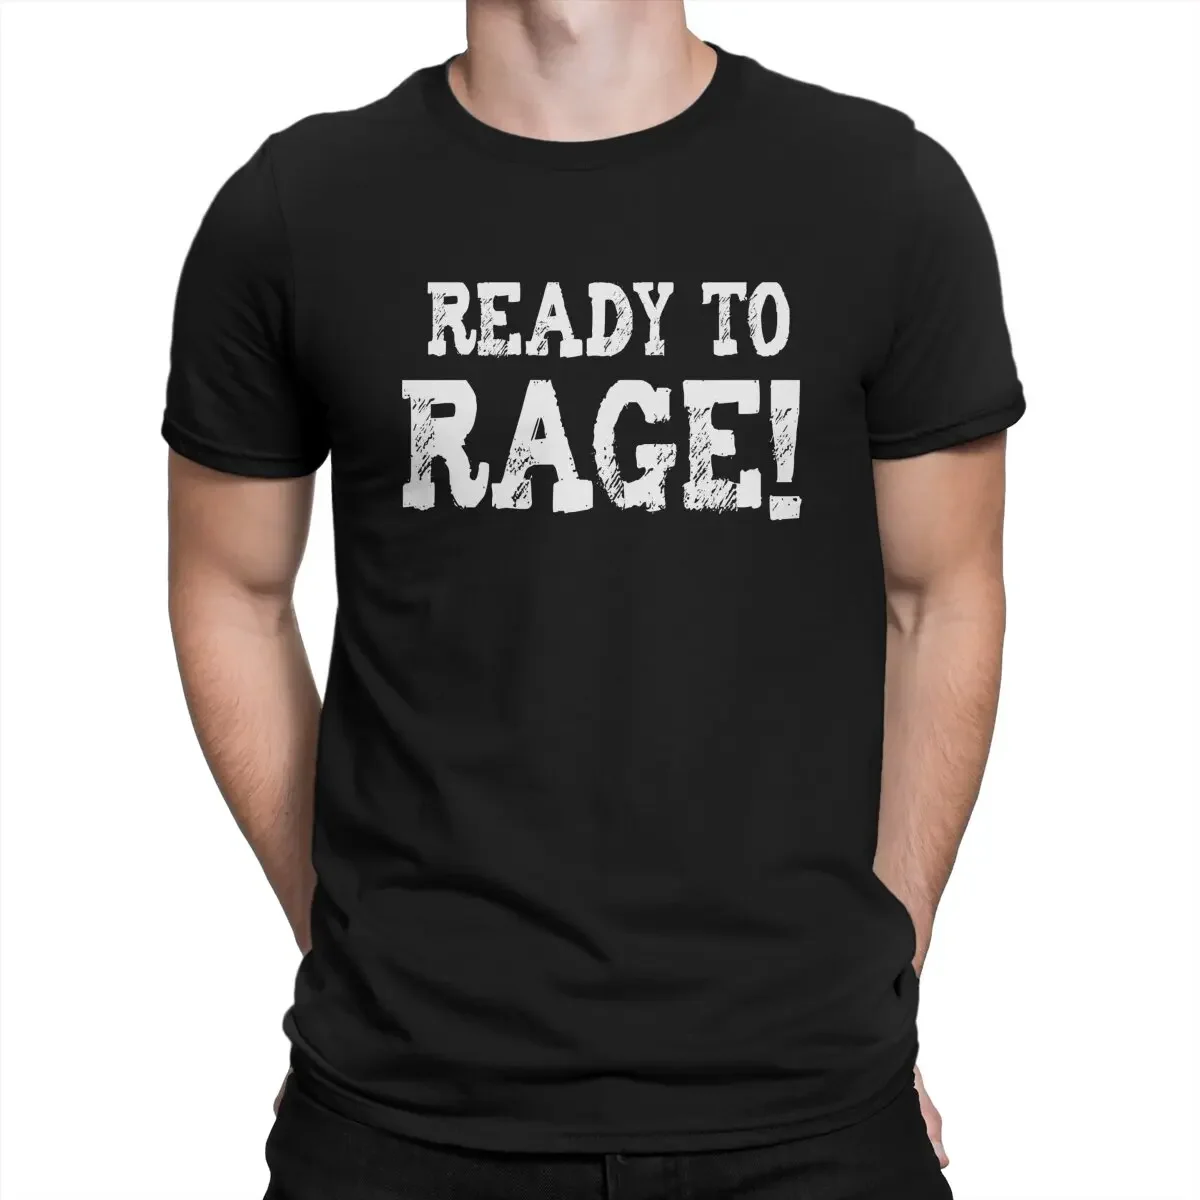 

Мужские футболки Go, футболки R-Ready для R-Race, одежда из чистого хлопка, новинка, футболка с круглым вырезом и короткими рукавами, футболка с принтом